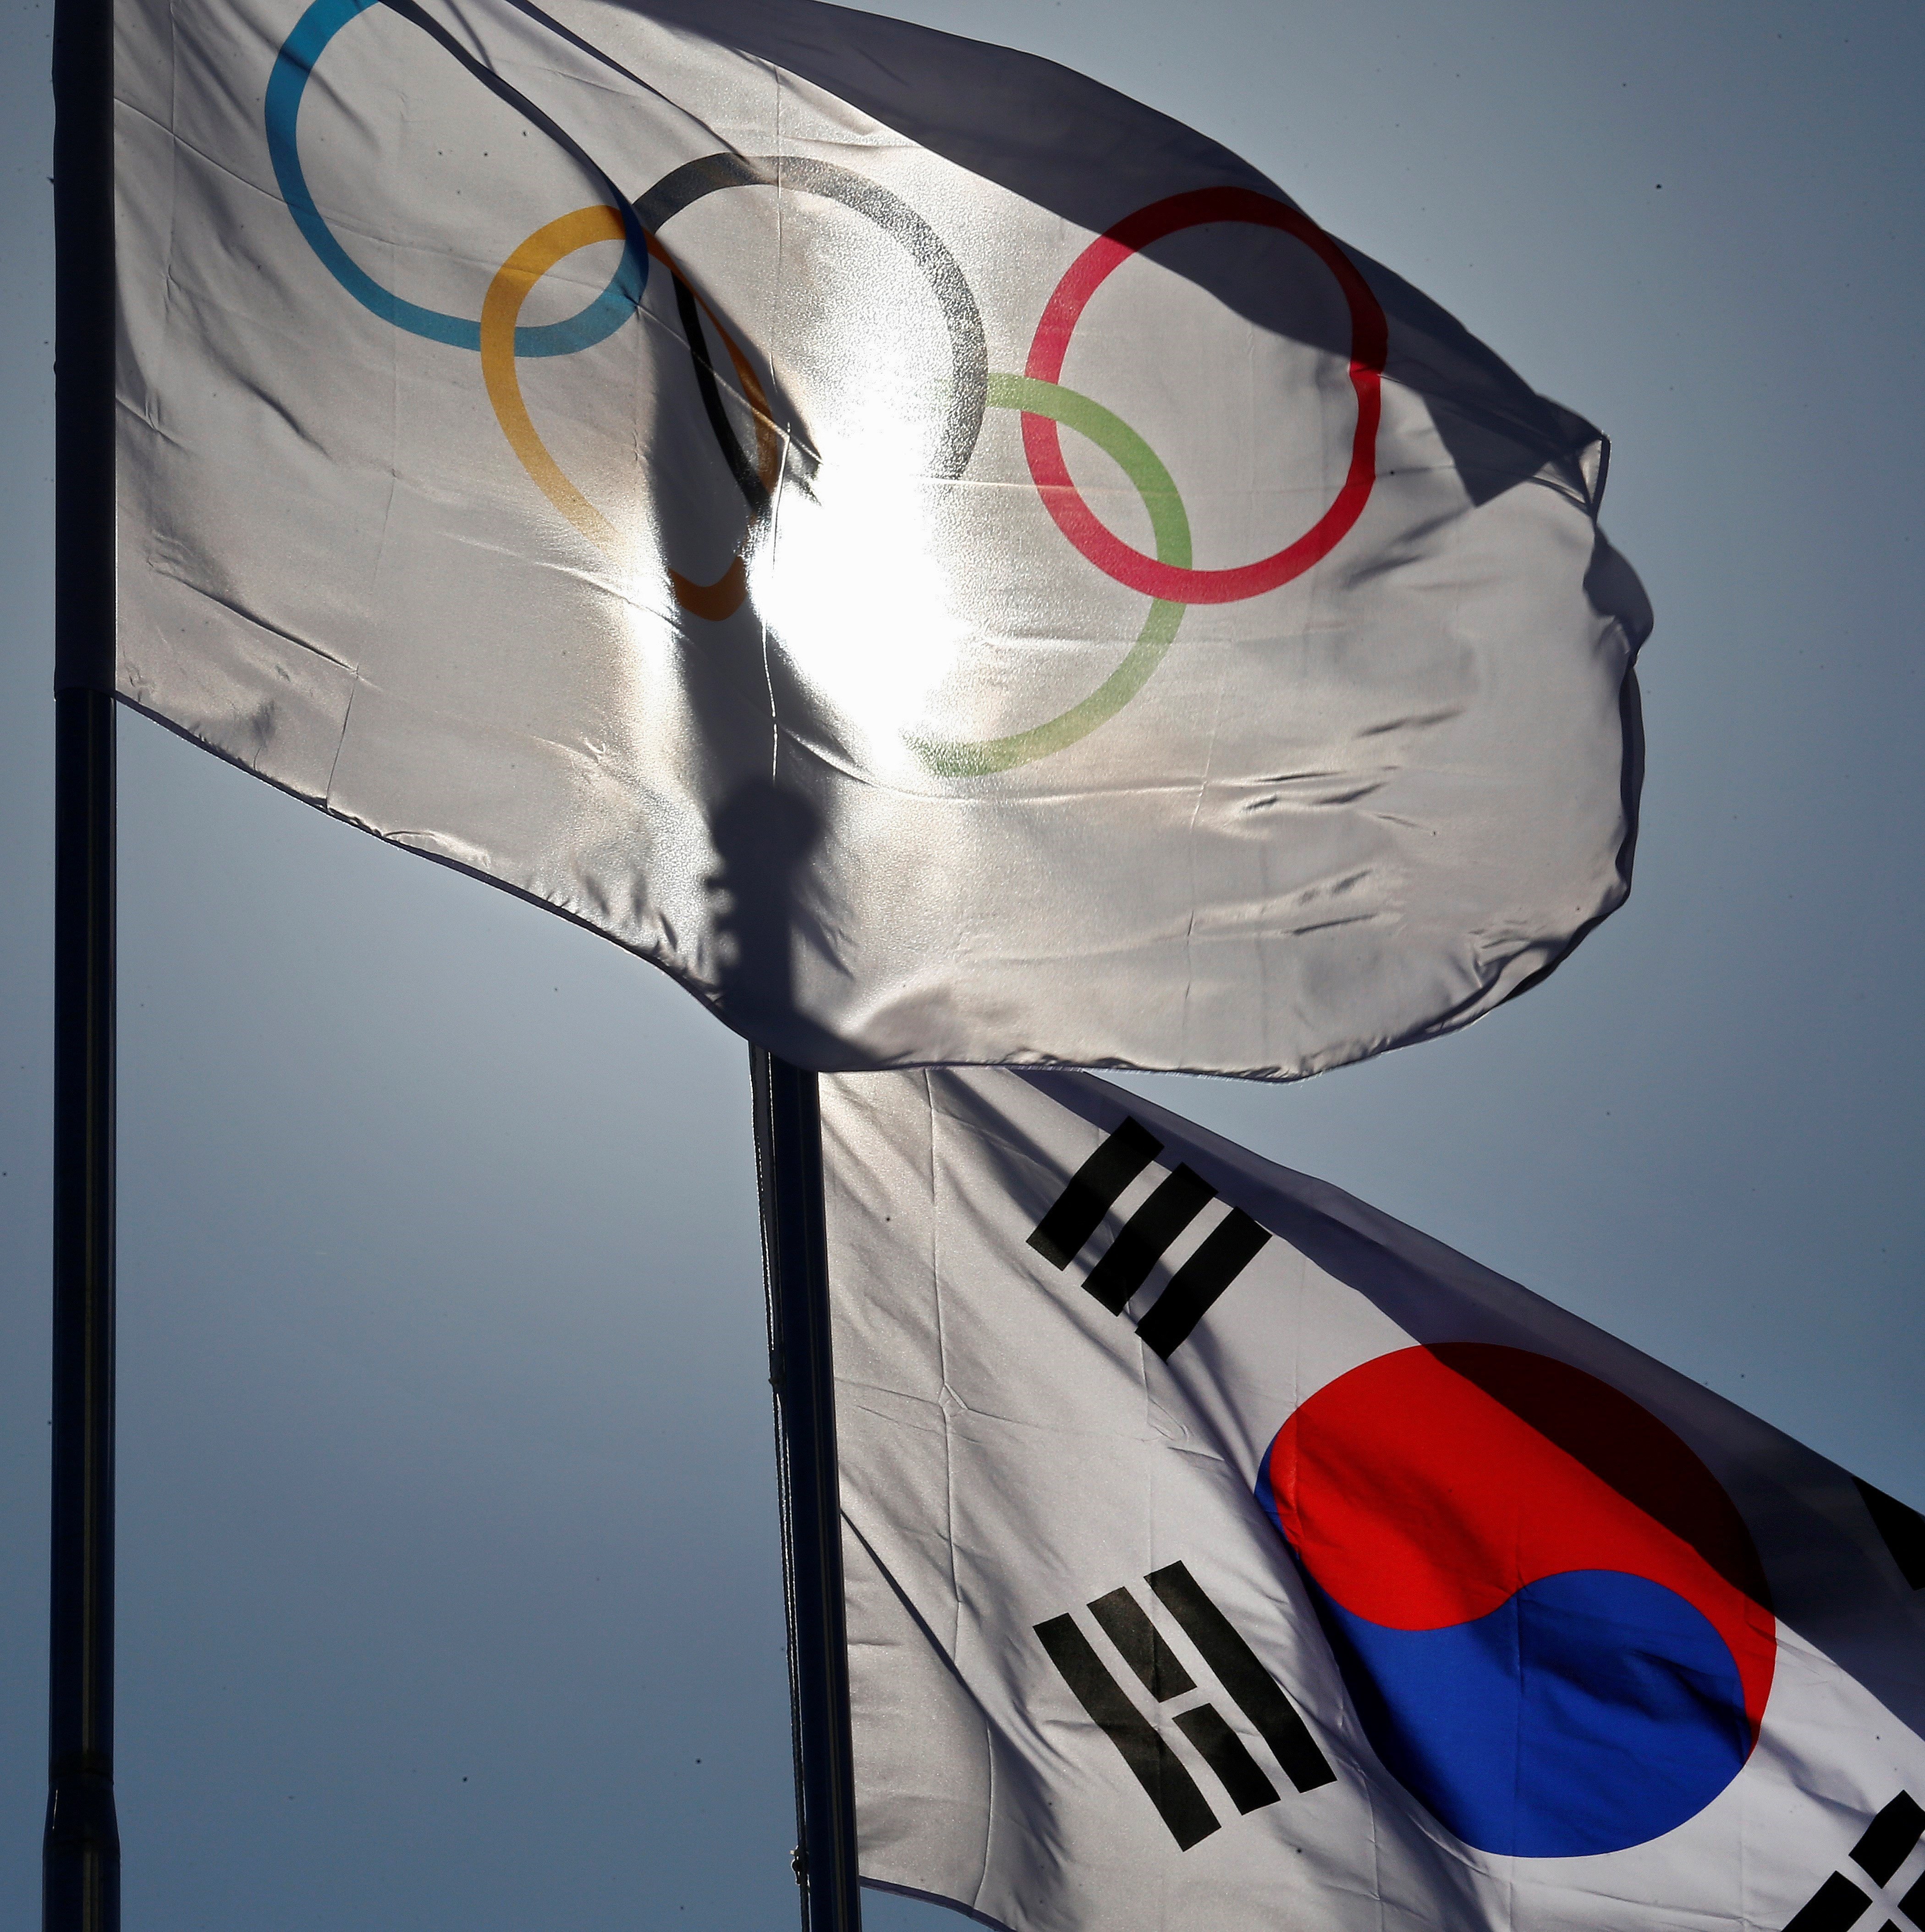 Les dues Corees podrien celebrar una cimera durant els Jocs Olímpics